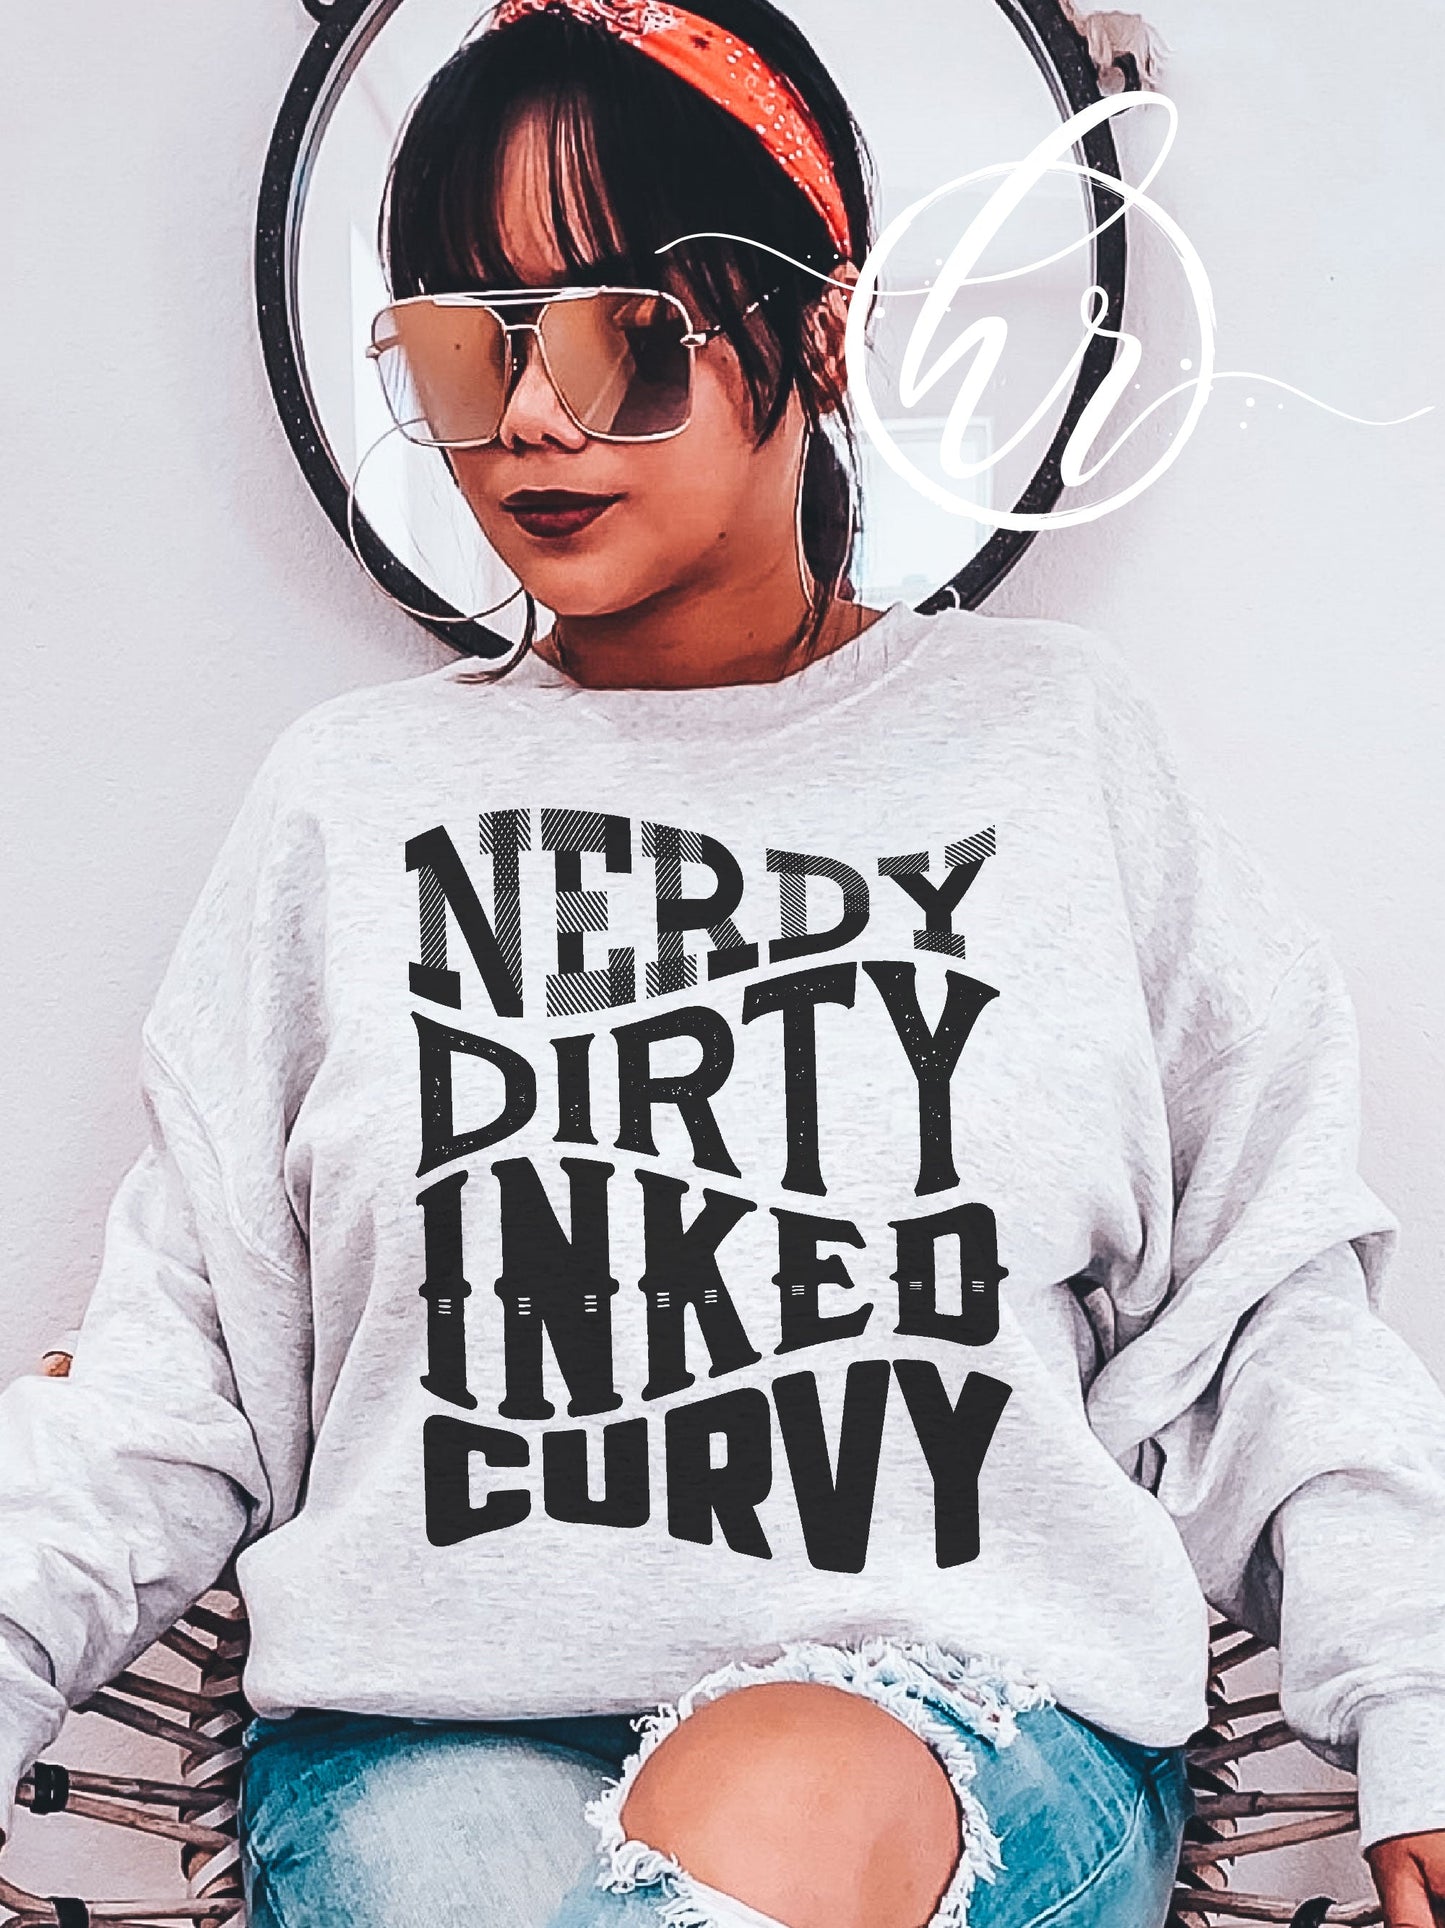 Nerdy Dirty Inked Curvy